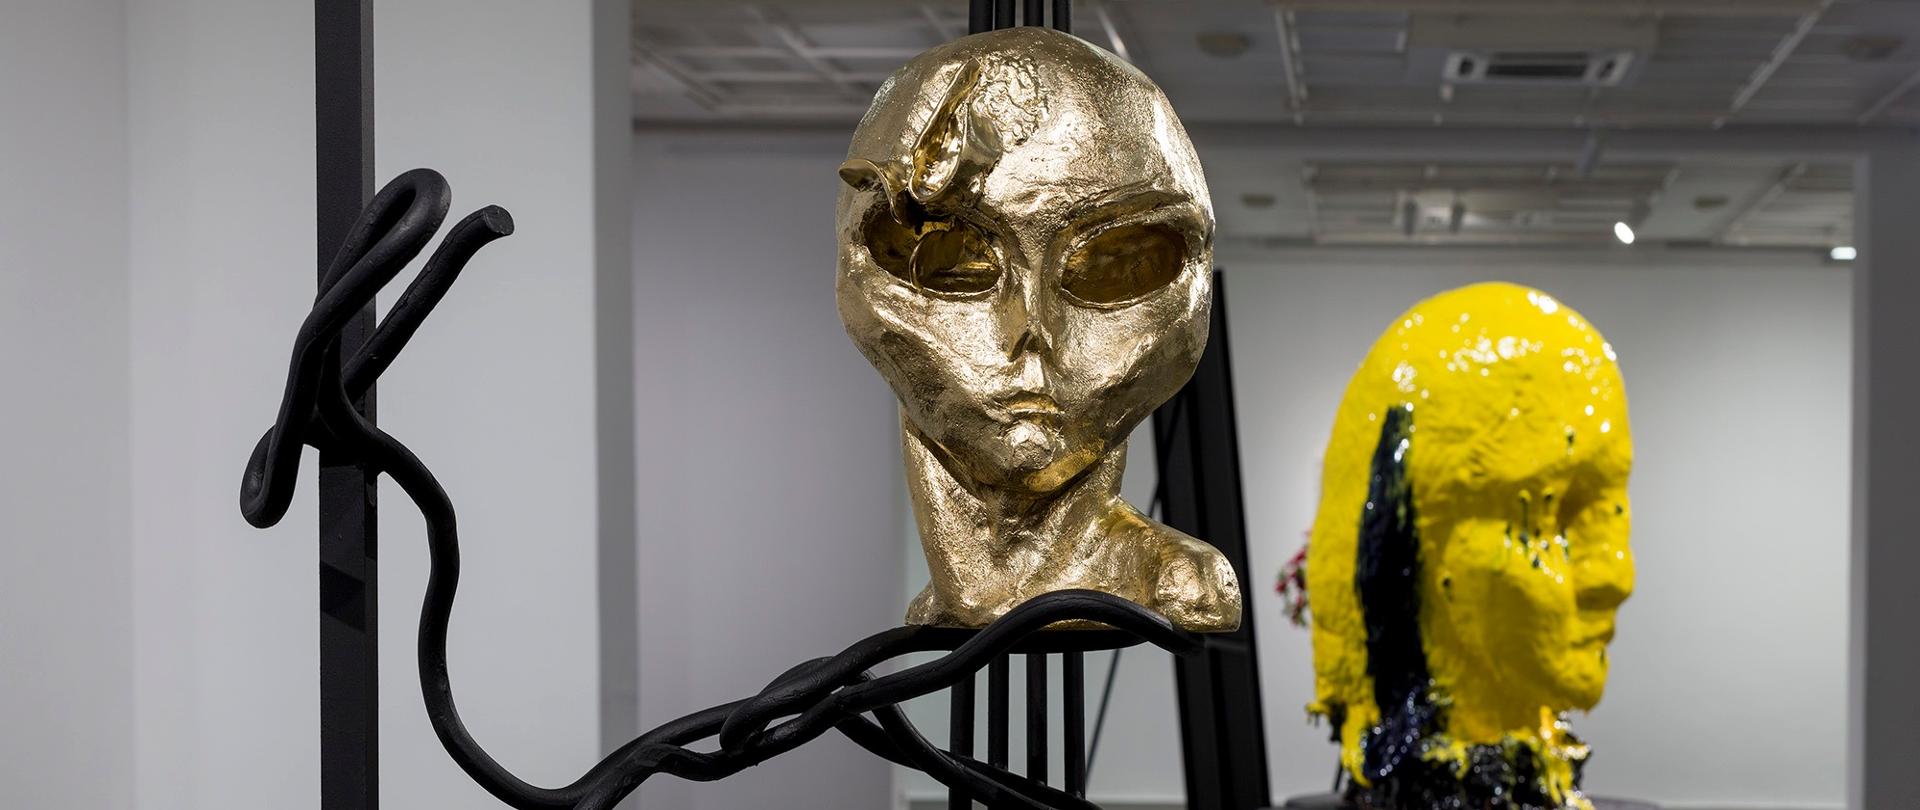 Instalacje artystyczne, głowy postaci podobne do człowieka w kolorze złotym i żółtym